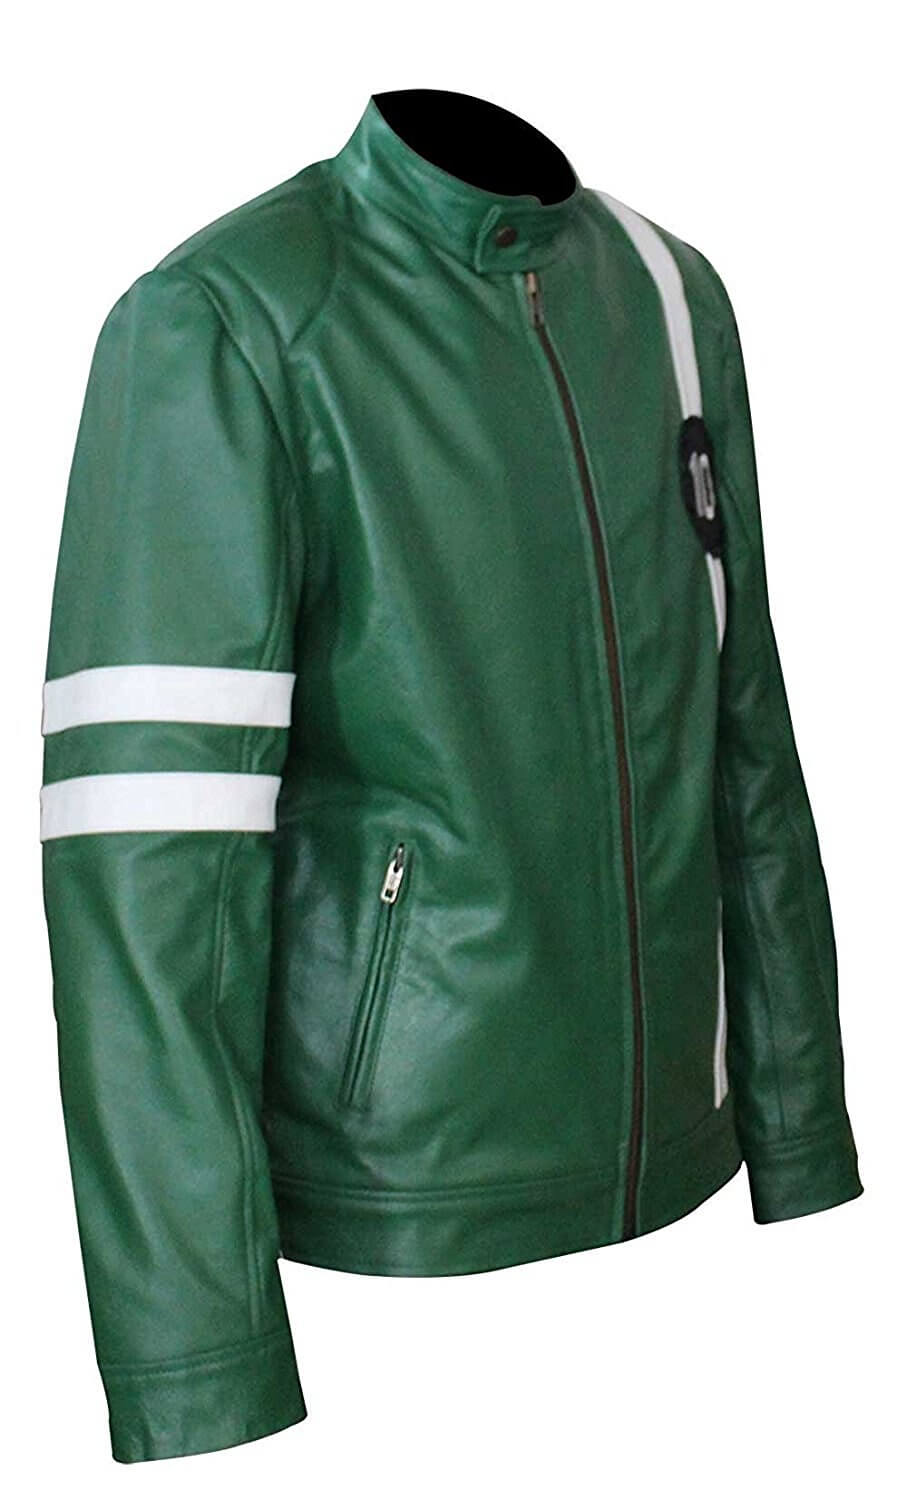 Ben 10 Jacket - Green Alien Swarm Biker Jacket